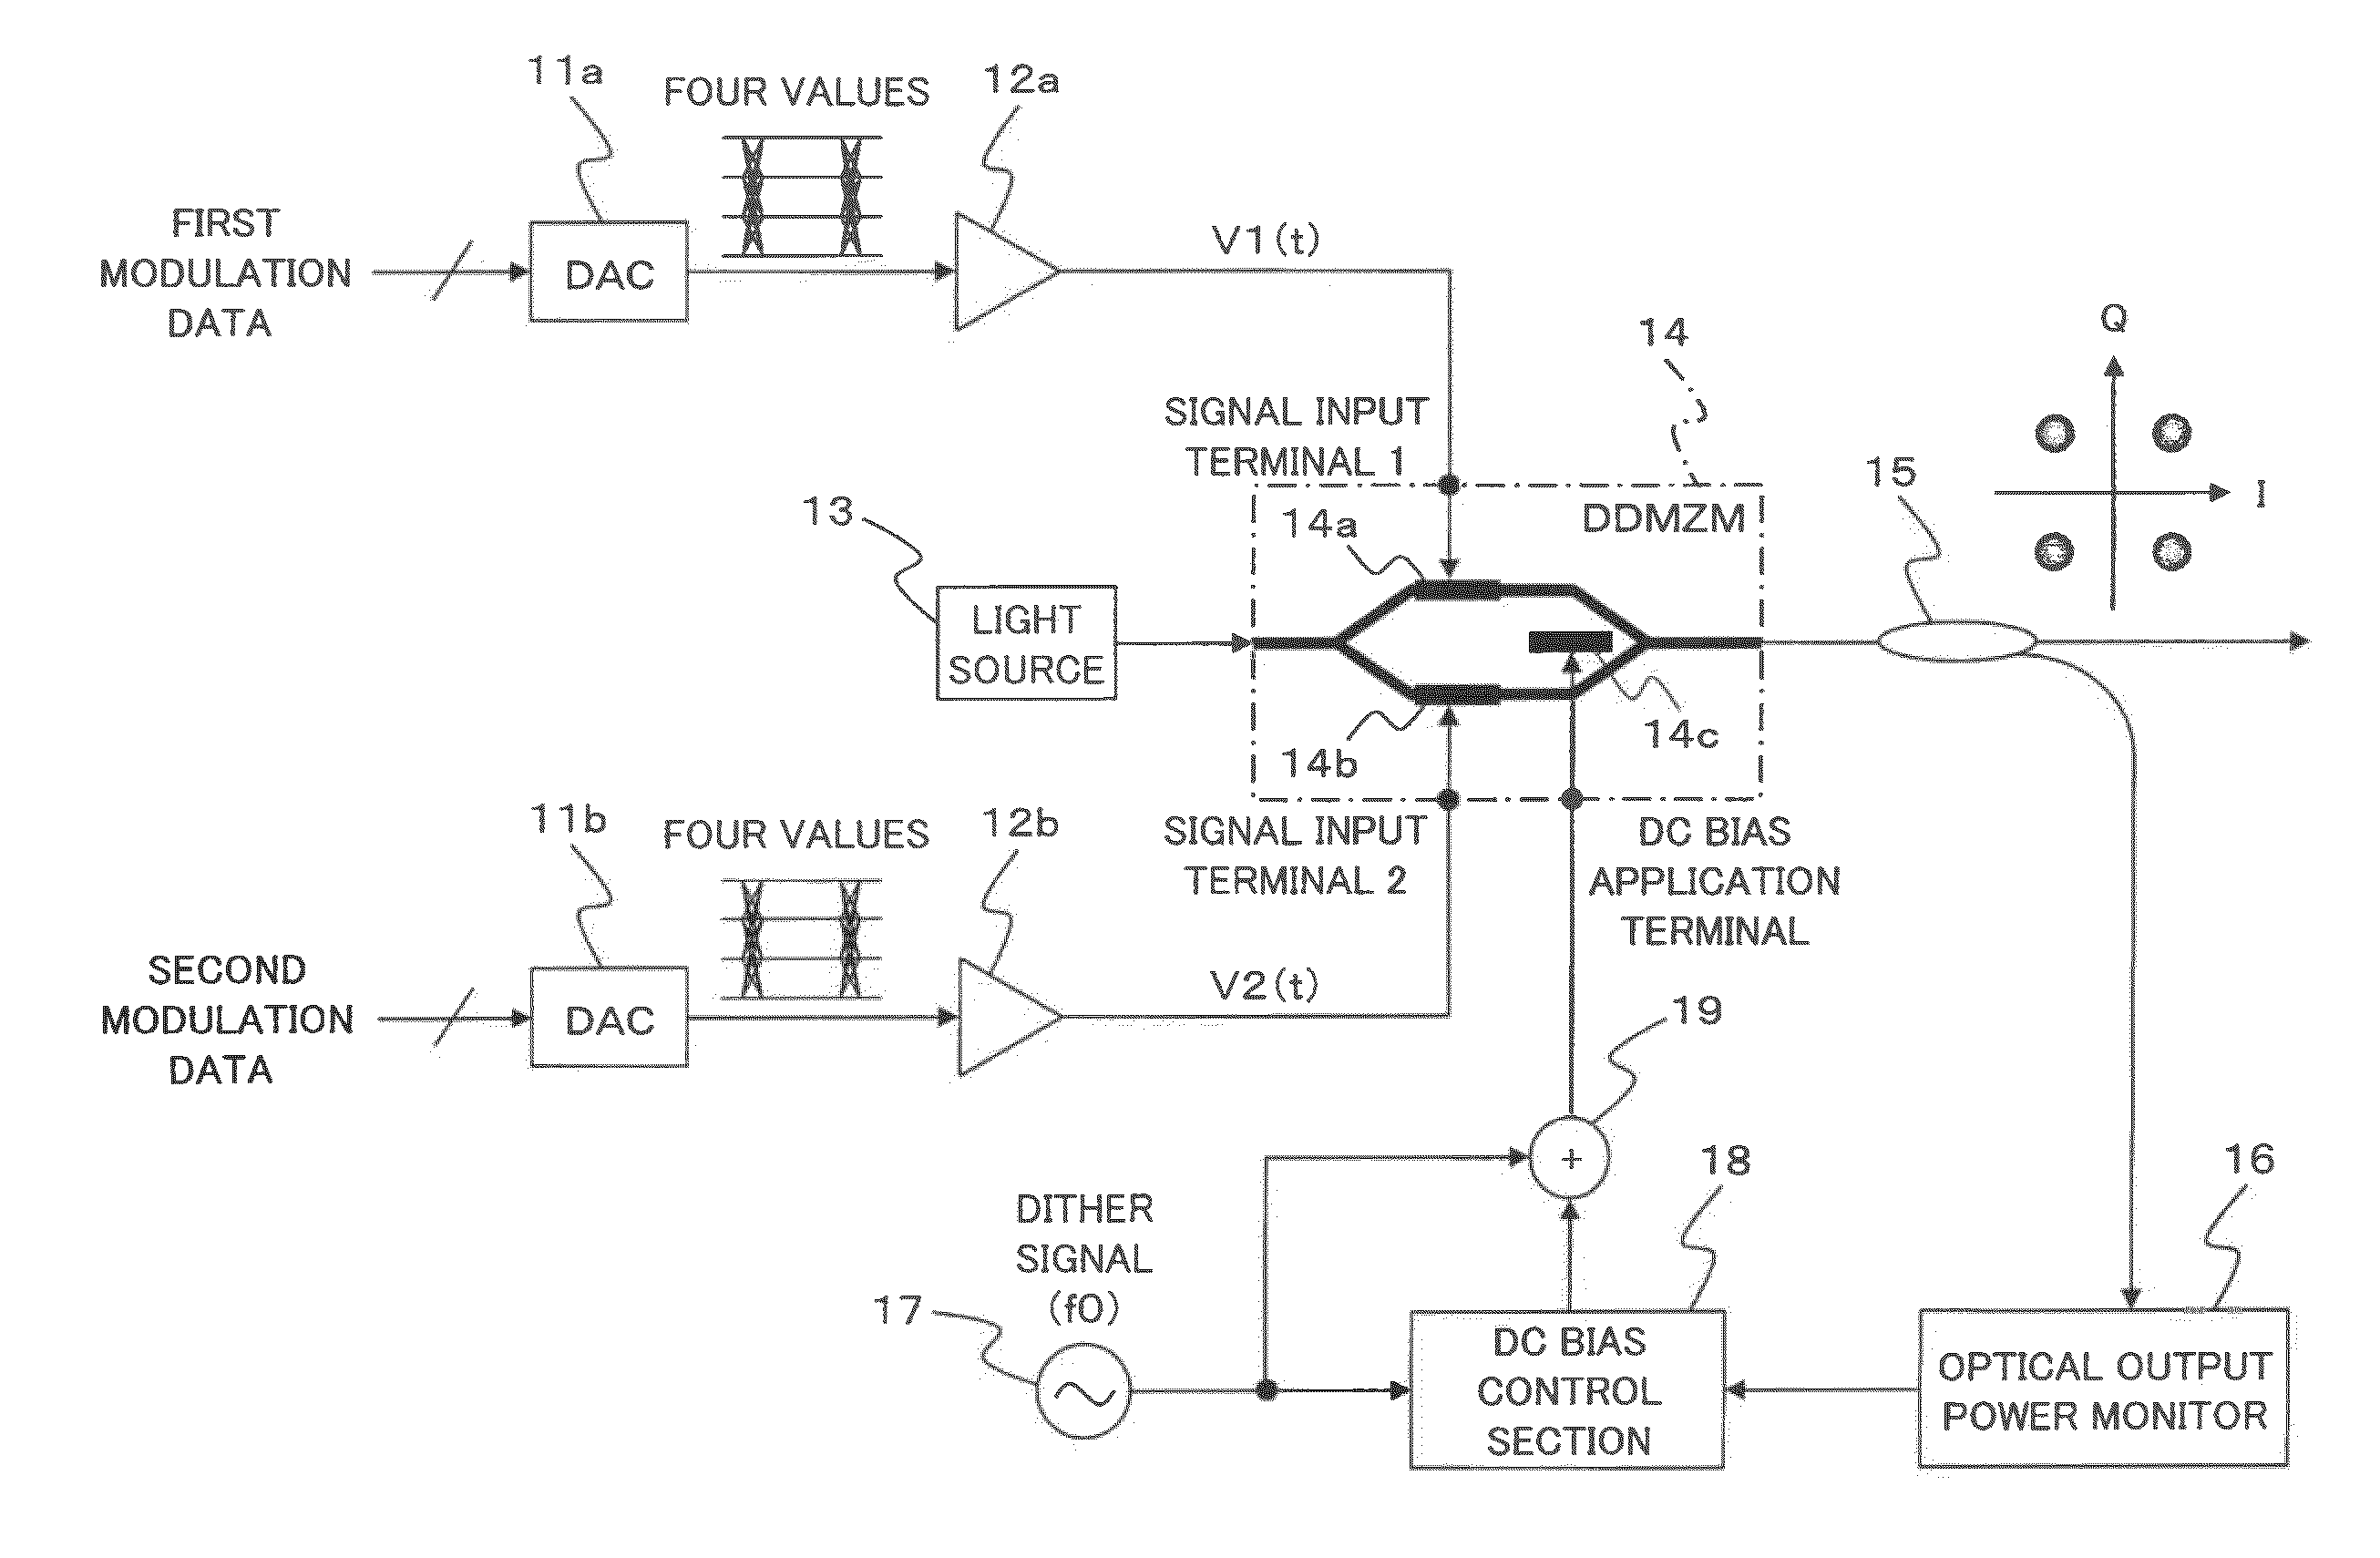 Multi-value optical transmitter